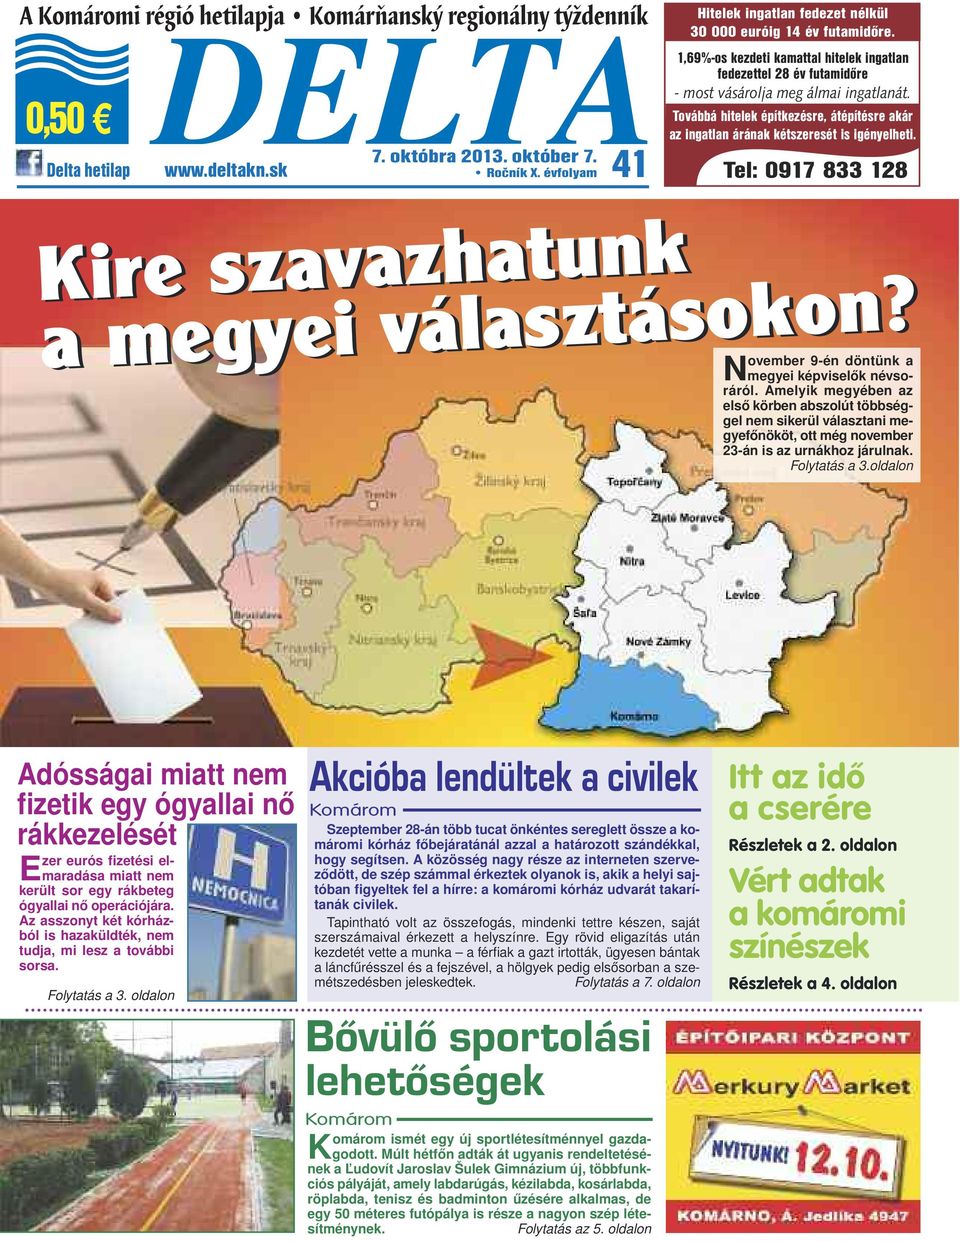 Továbbá hitelek építkezésre, átépítésre akár az ingatlan árának kétszeresét is igényelheti. Delta hetilap www.deltakn.sk Ročník X.